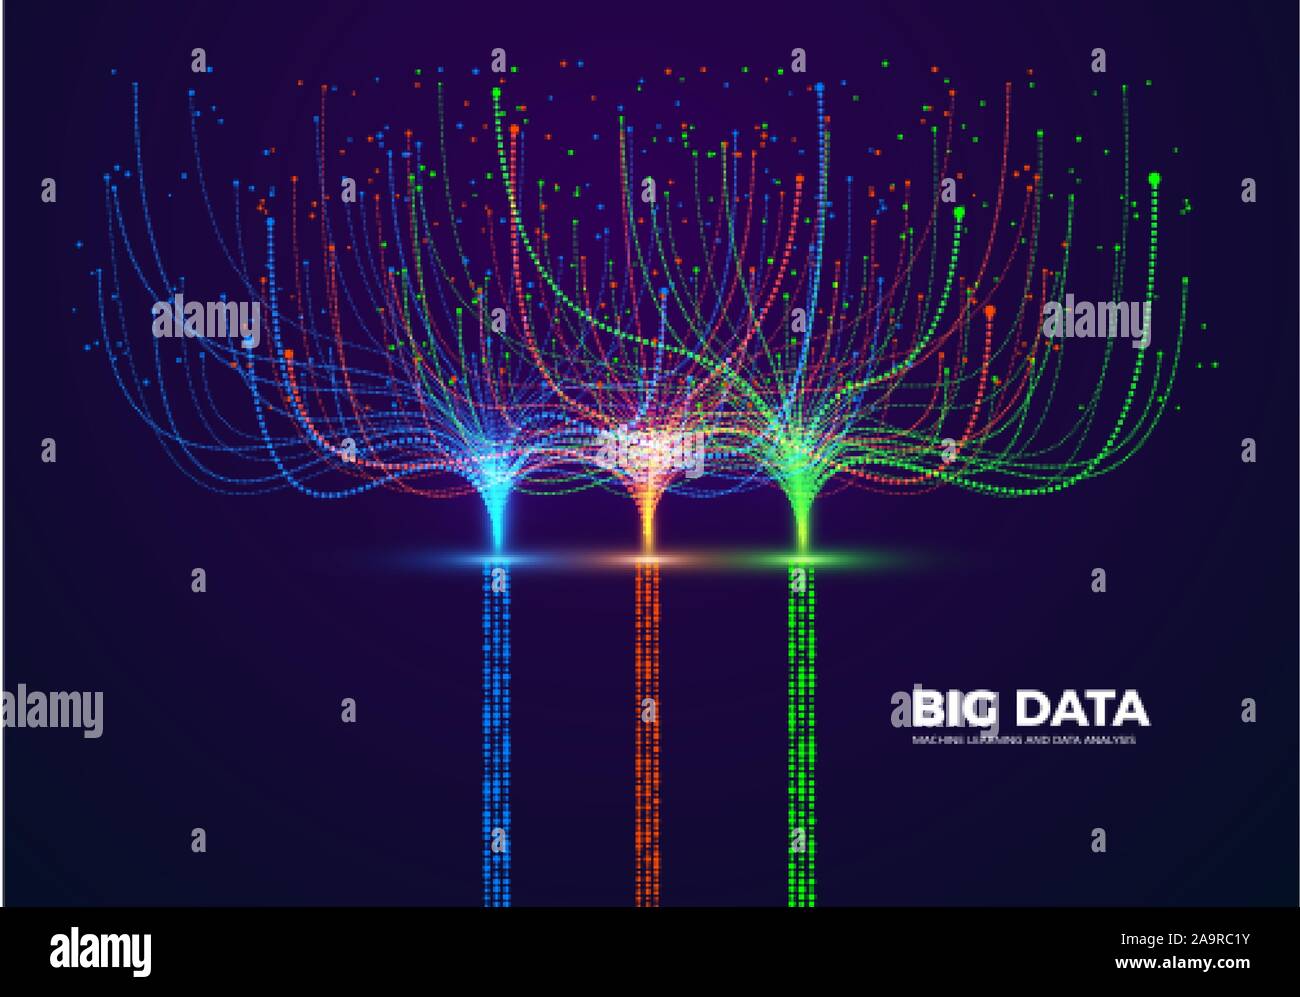 Big Data visuellen Konzept. Maschinelles Lernen und Data Analysis. Die digitale Technologie Visualisierung. Punkt- und Anschlussleitungen Datenfluss und Verarbeitung Infor Stock Vektor